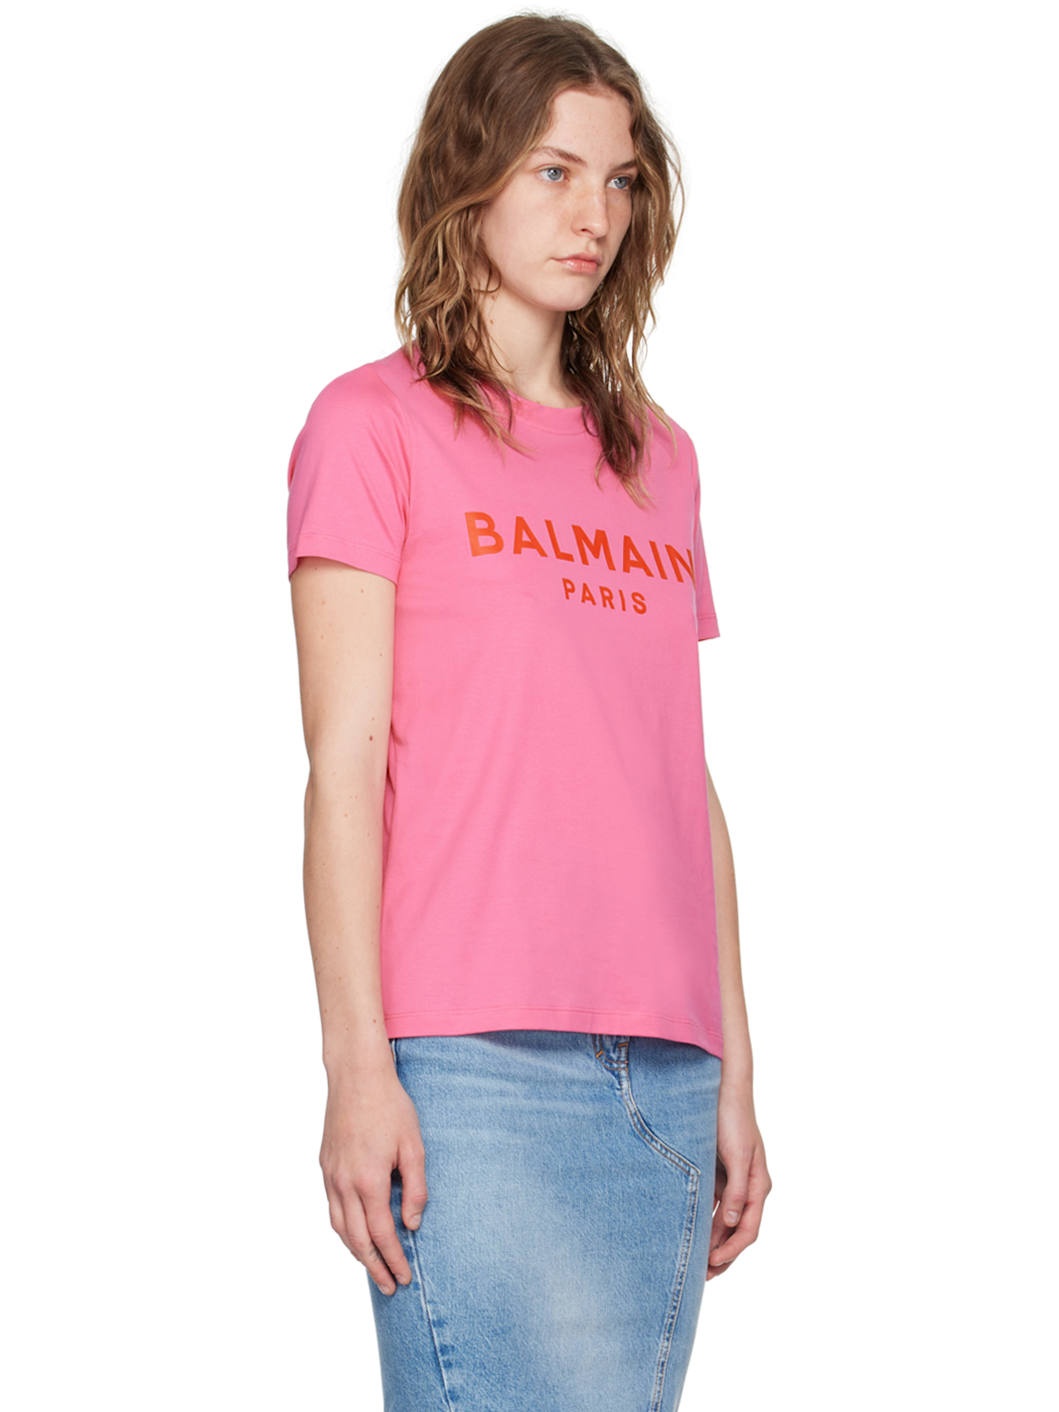 Pink 'Balmain Paris' T-Shirt - 2